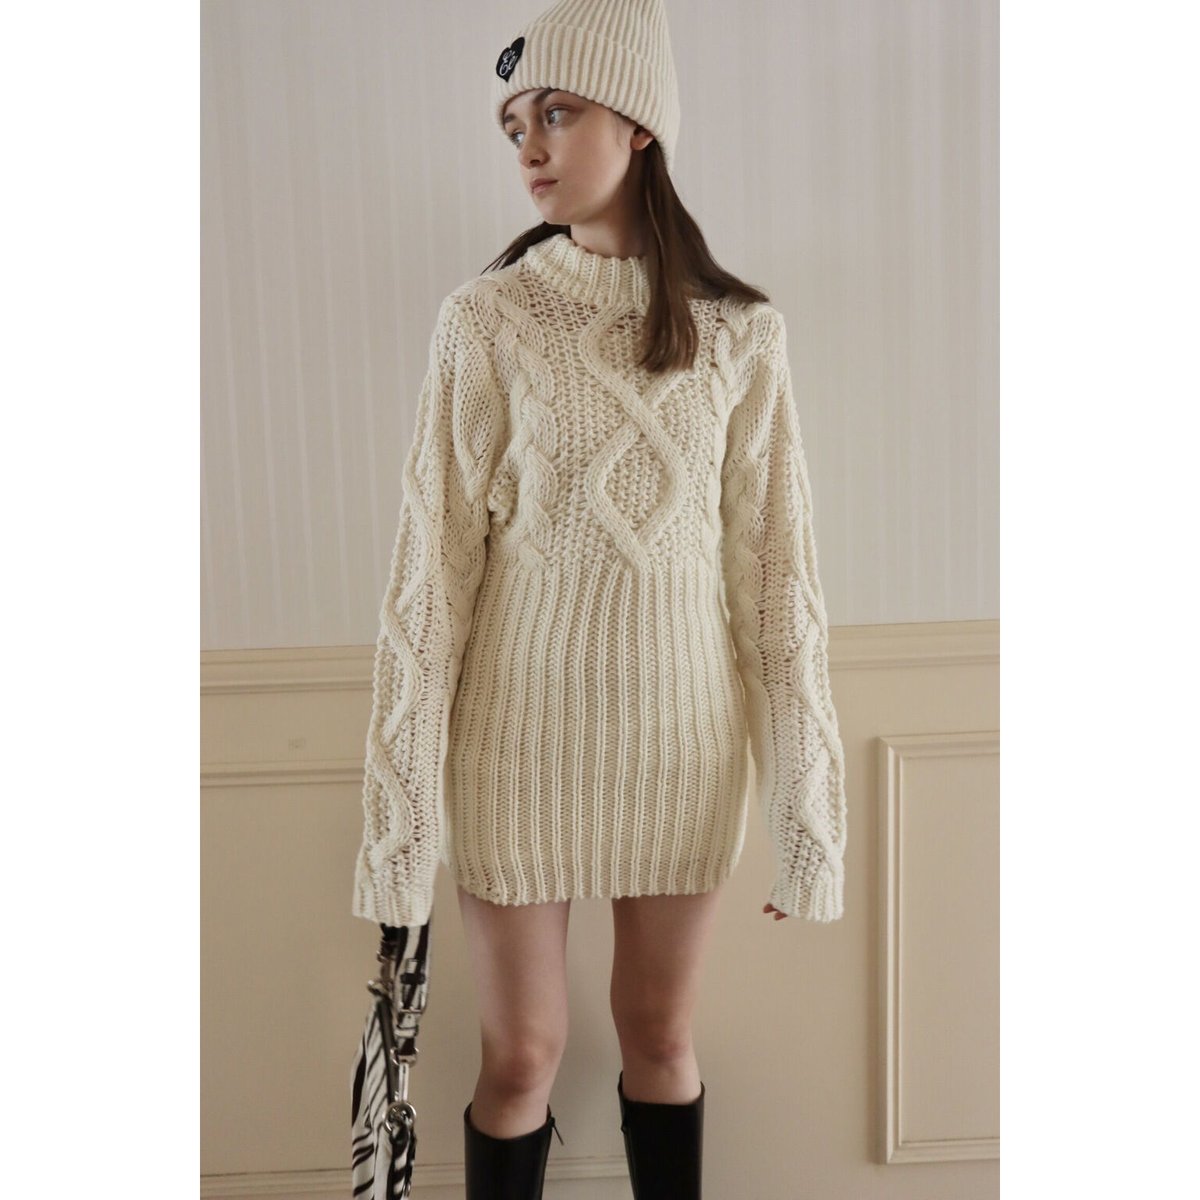 ミニワンピースcable knit lady onepiece ivory 7513円